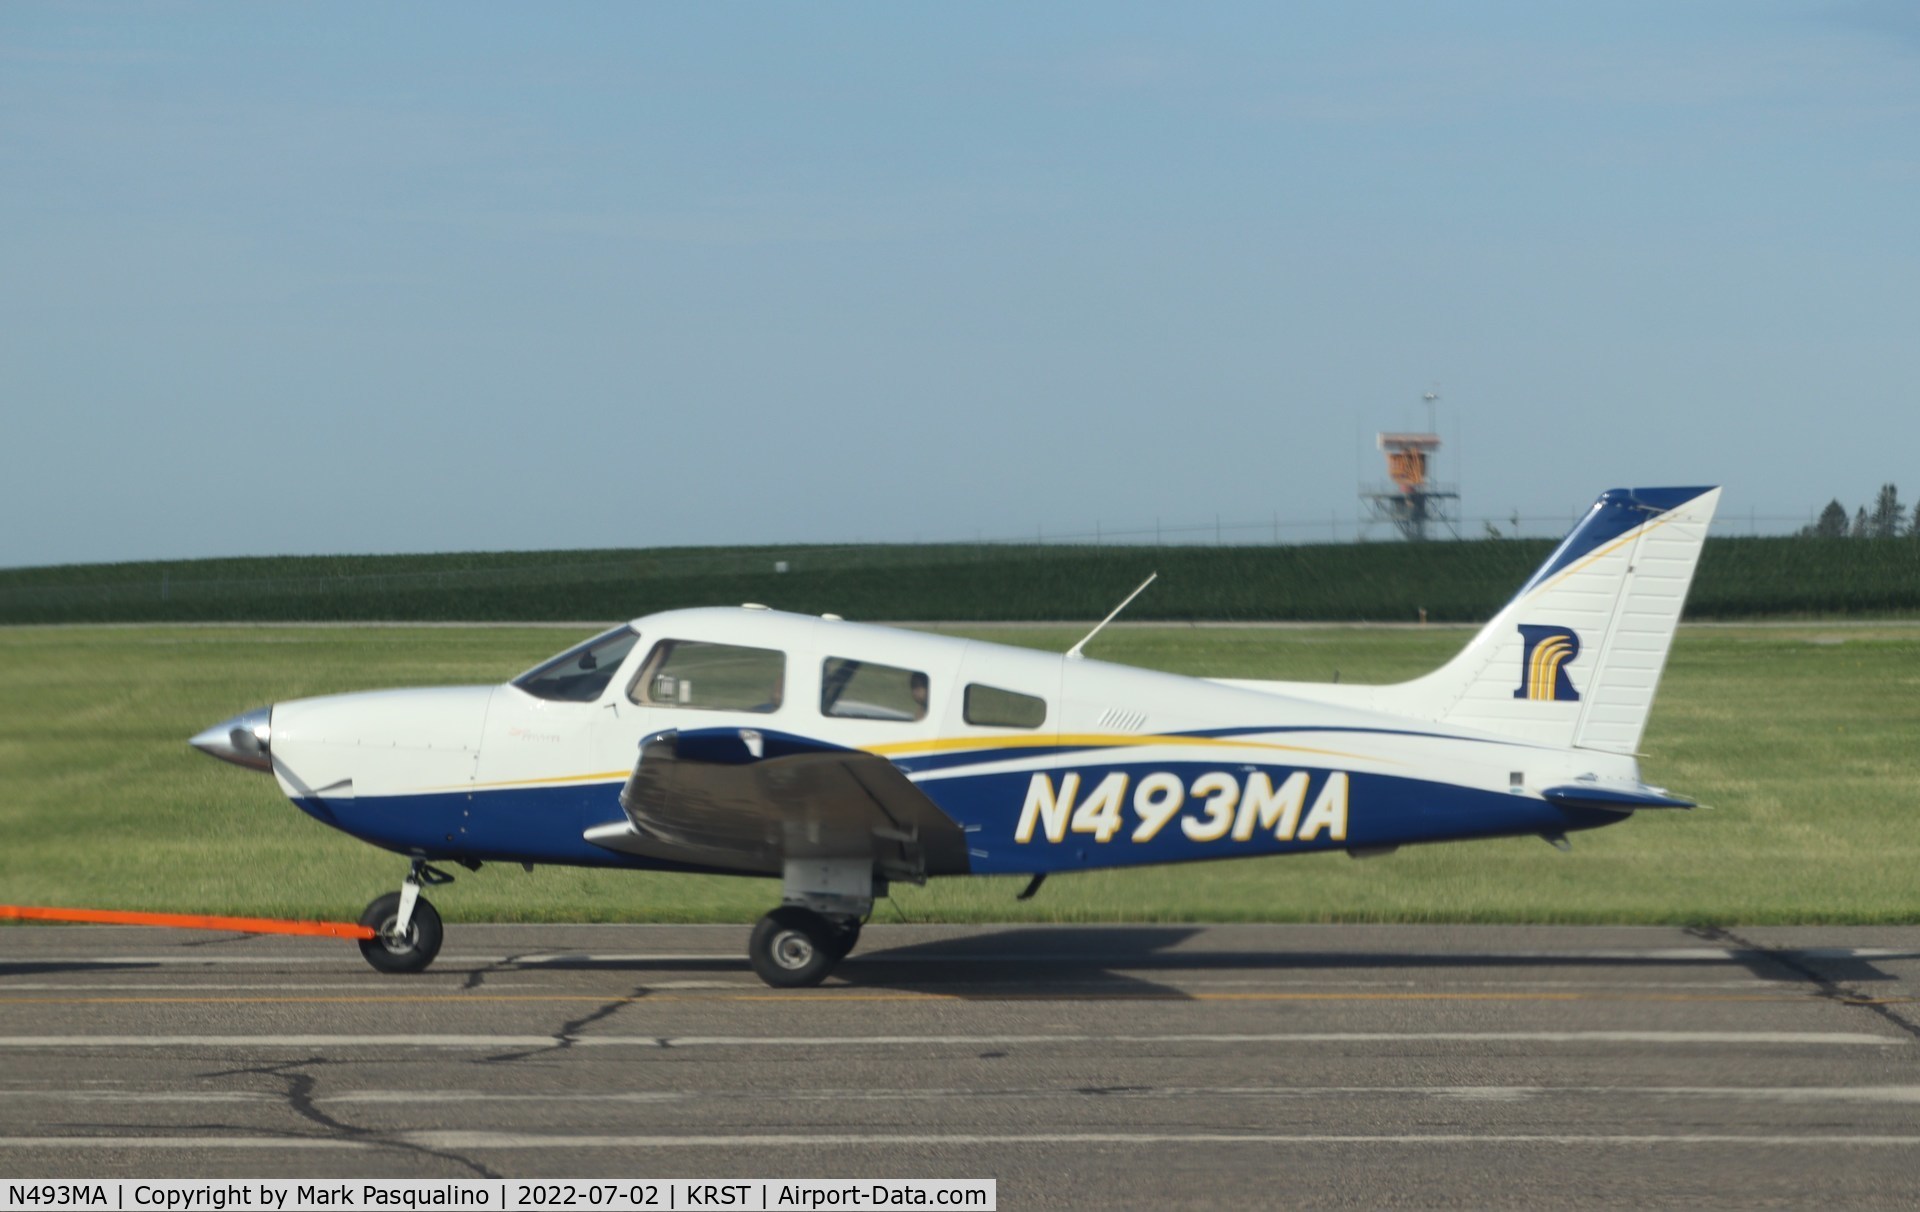 N493MA, 2001 Piper PA-28-181 C/N 2843486, Piper PA-28-181